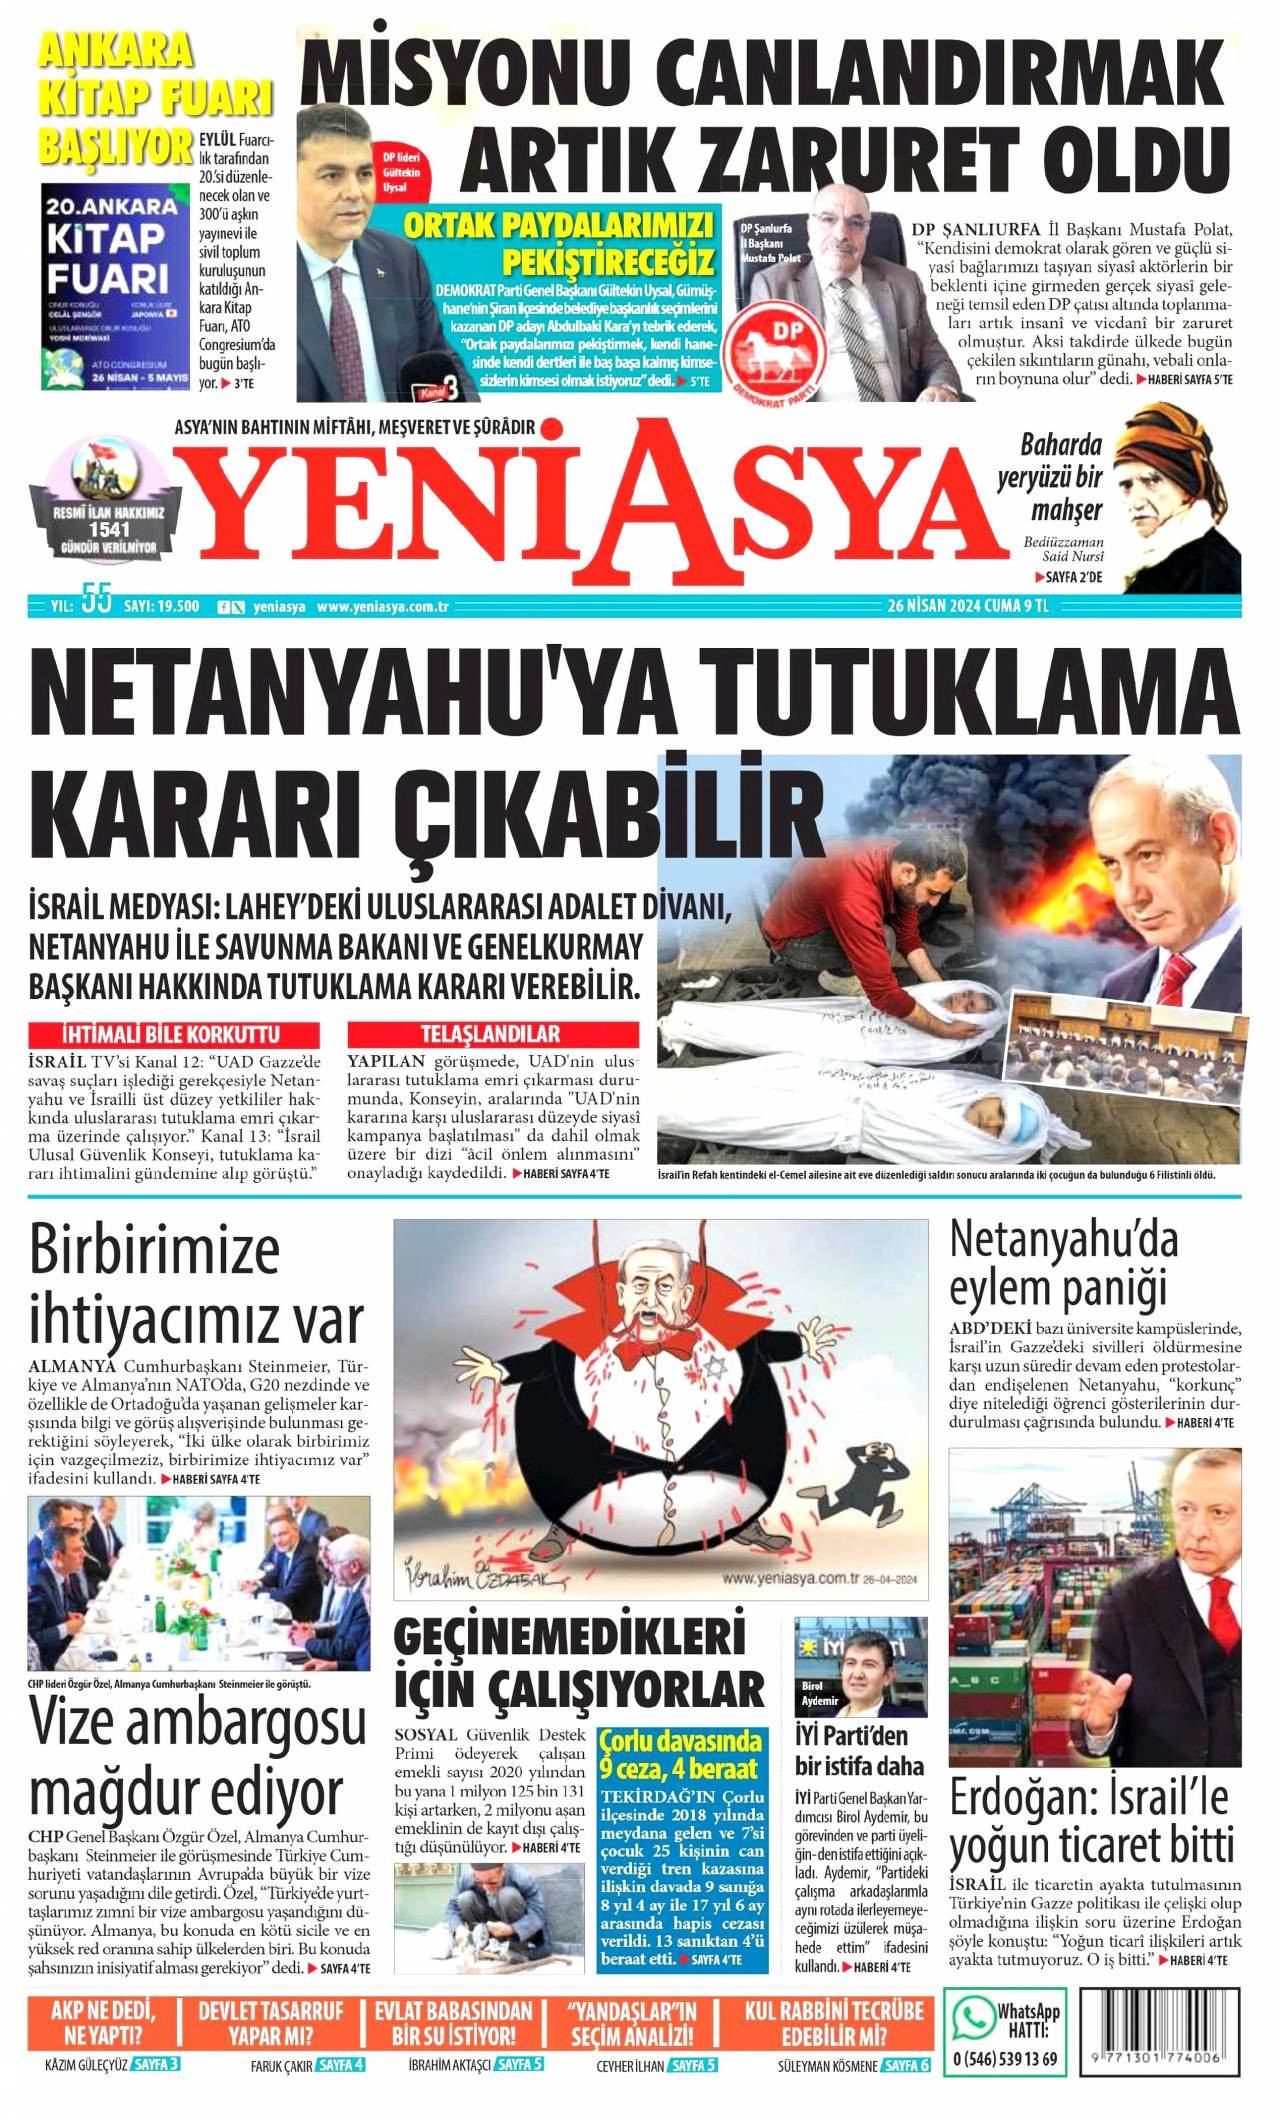 Yeni Asya Gazetesi Manşeti